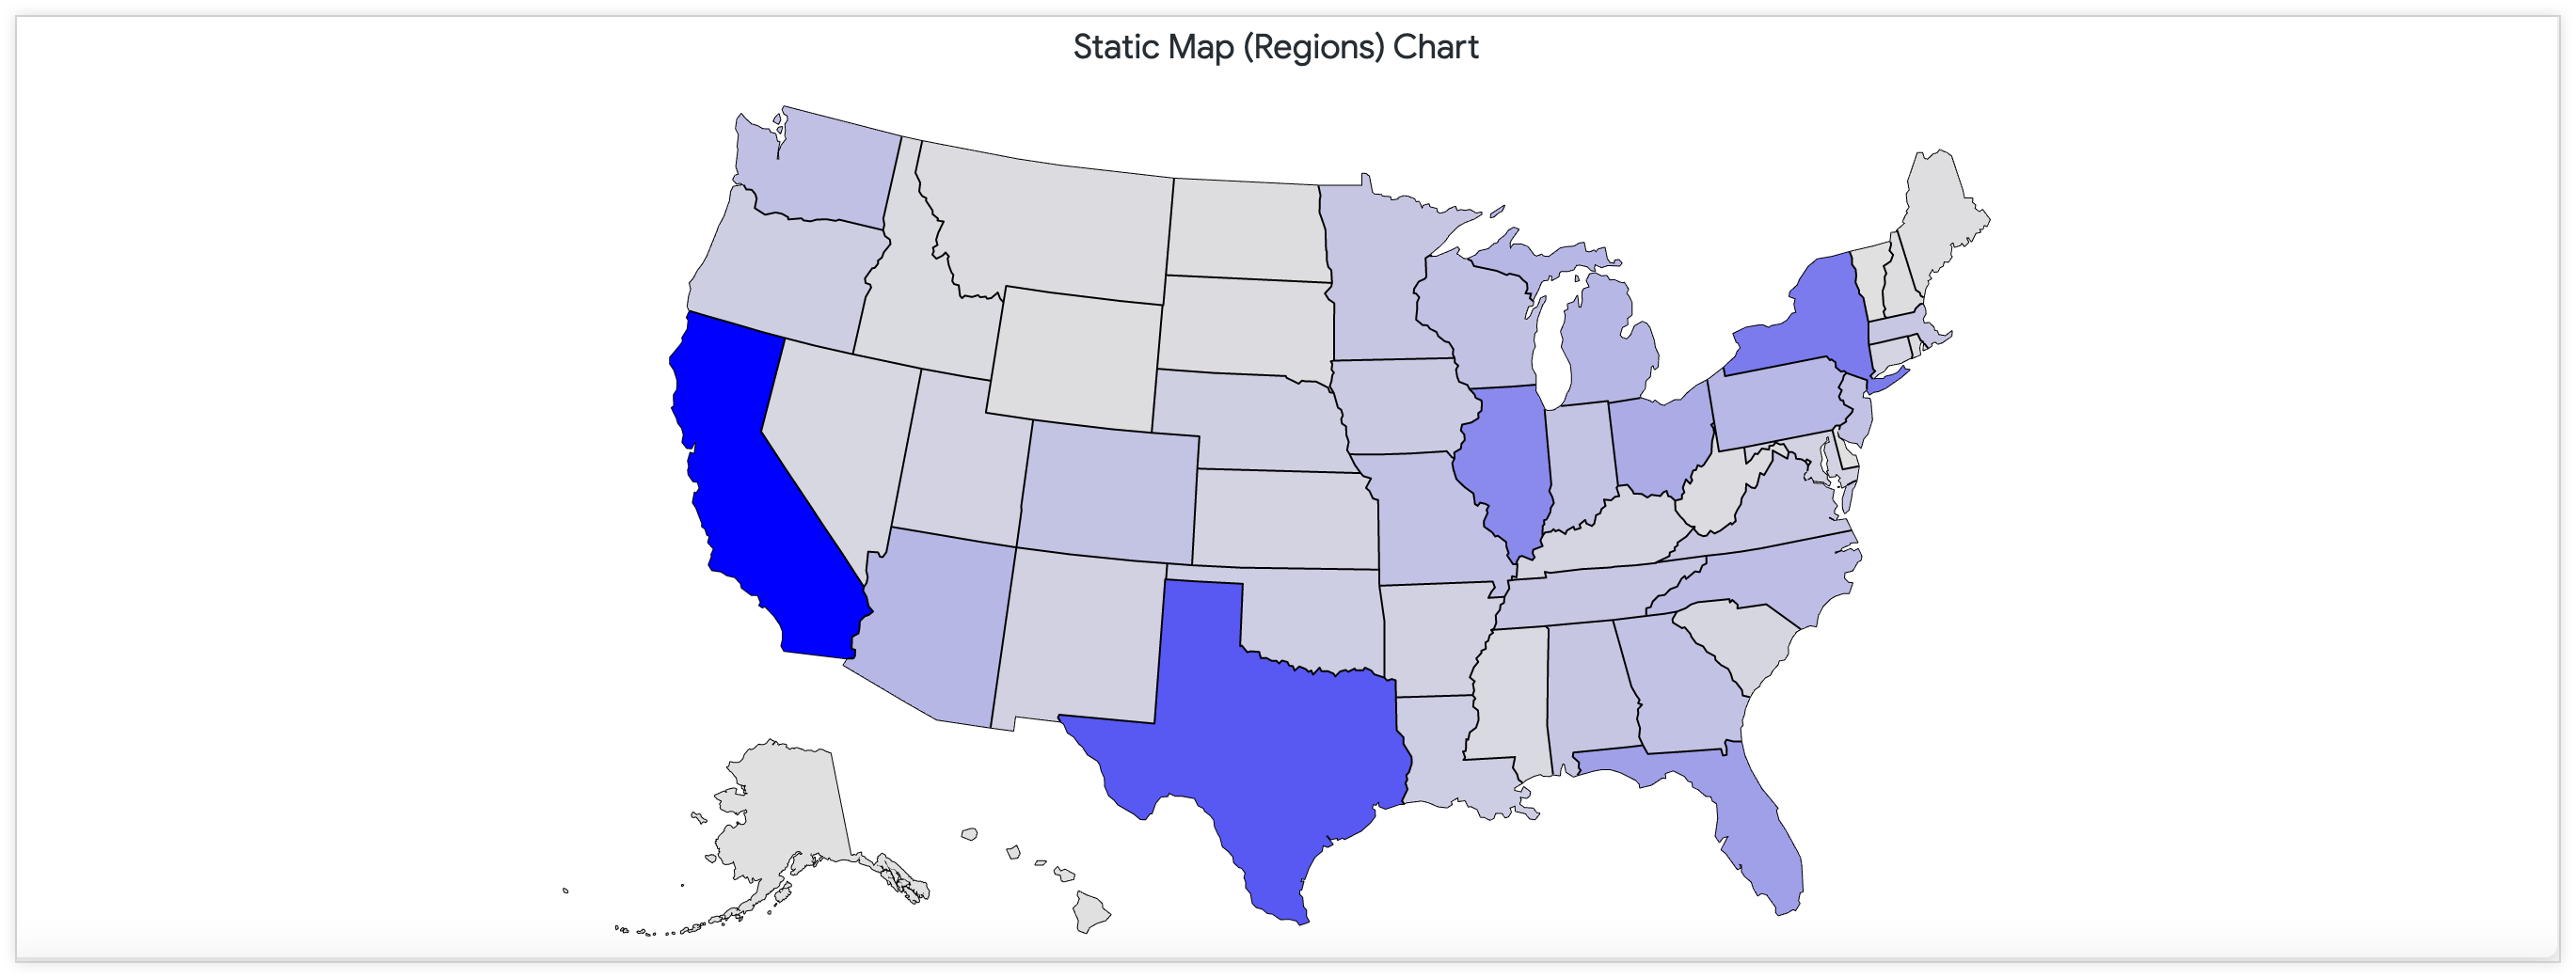 Mapa estático mostrando o número de lojas nos Estados Unidos em uma paleta de cores contínua.